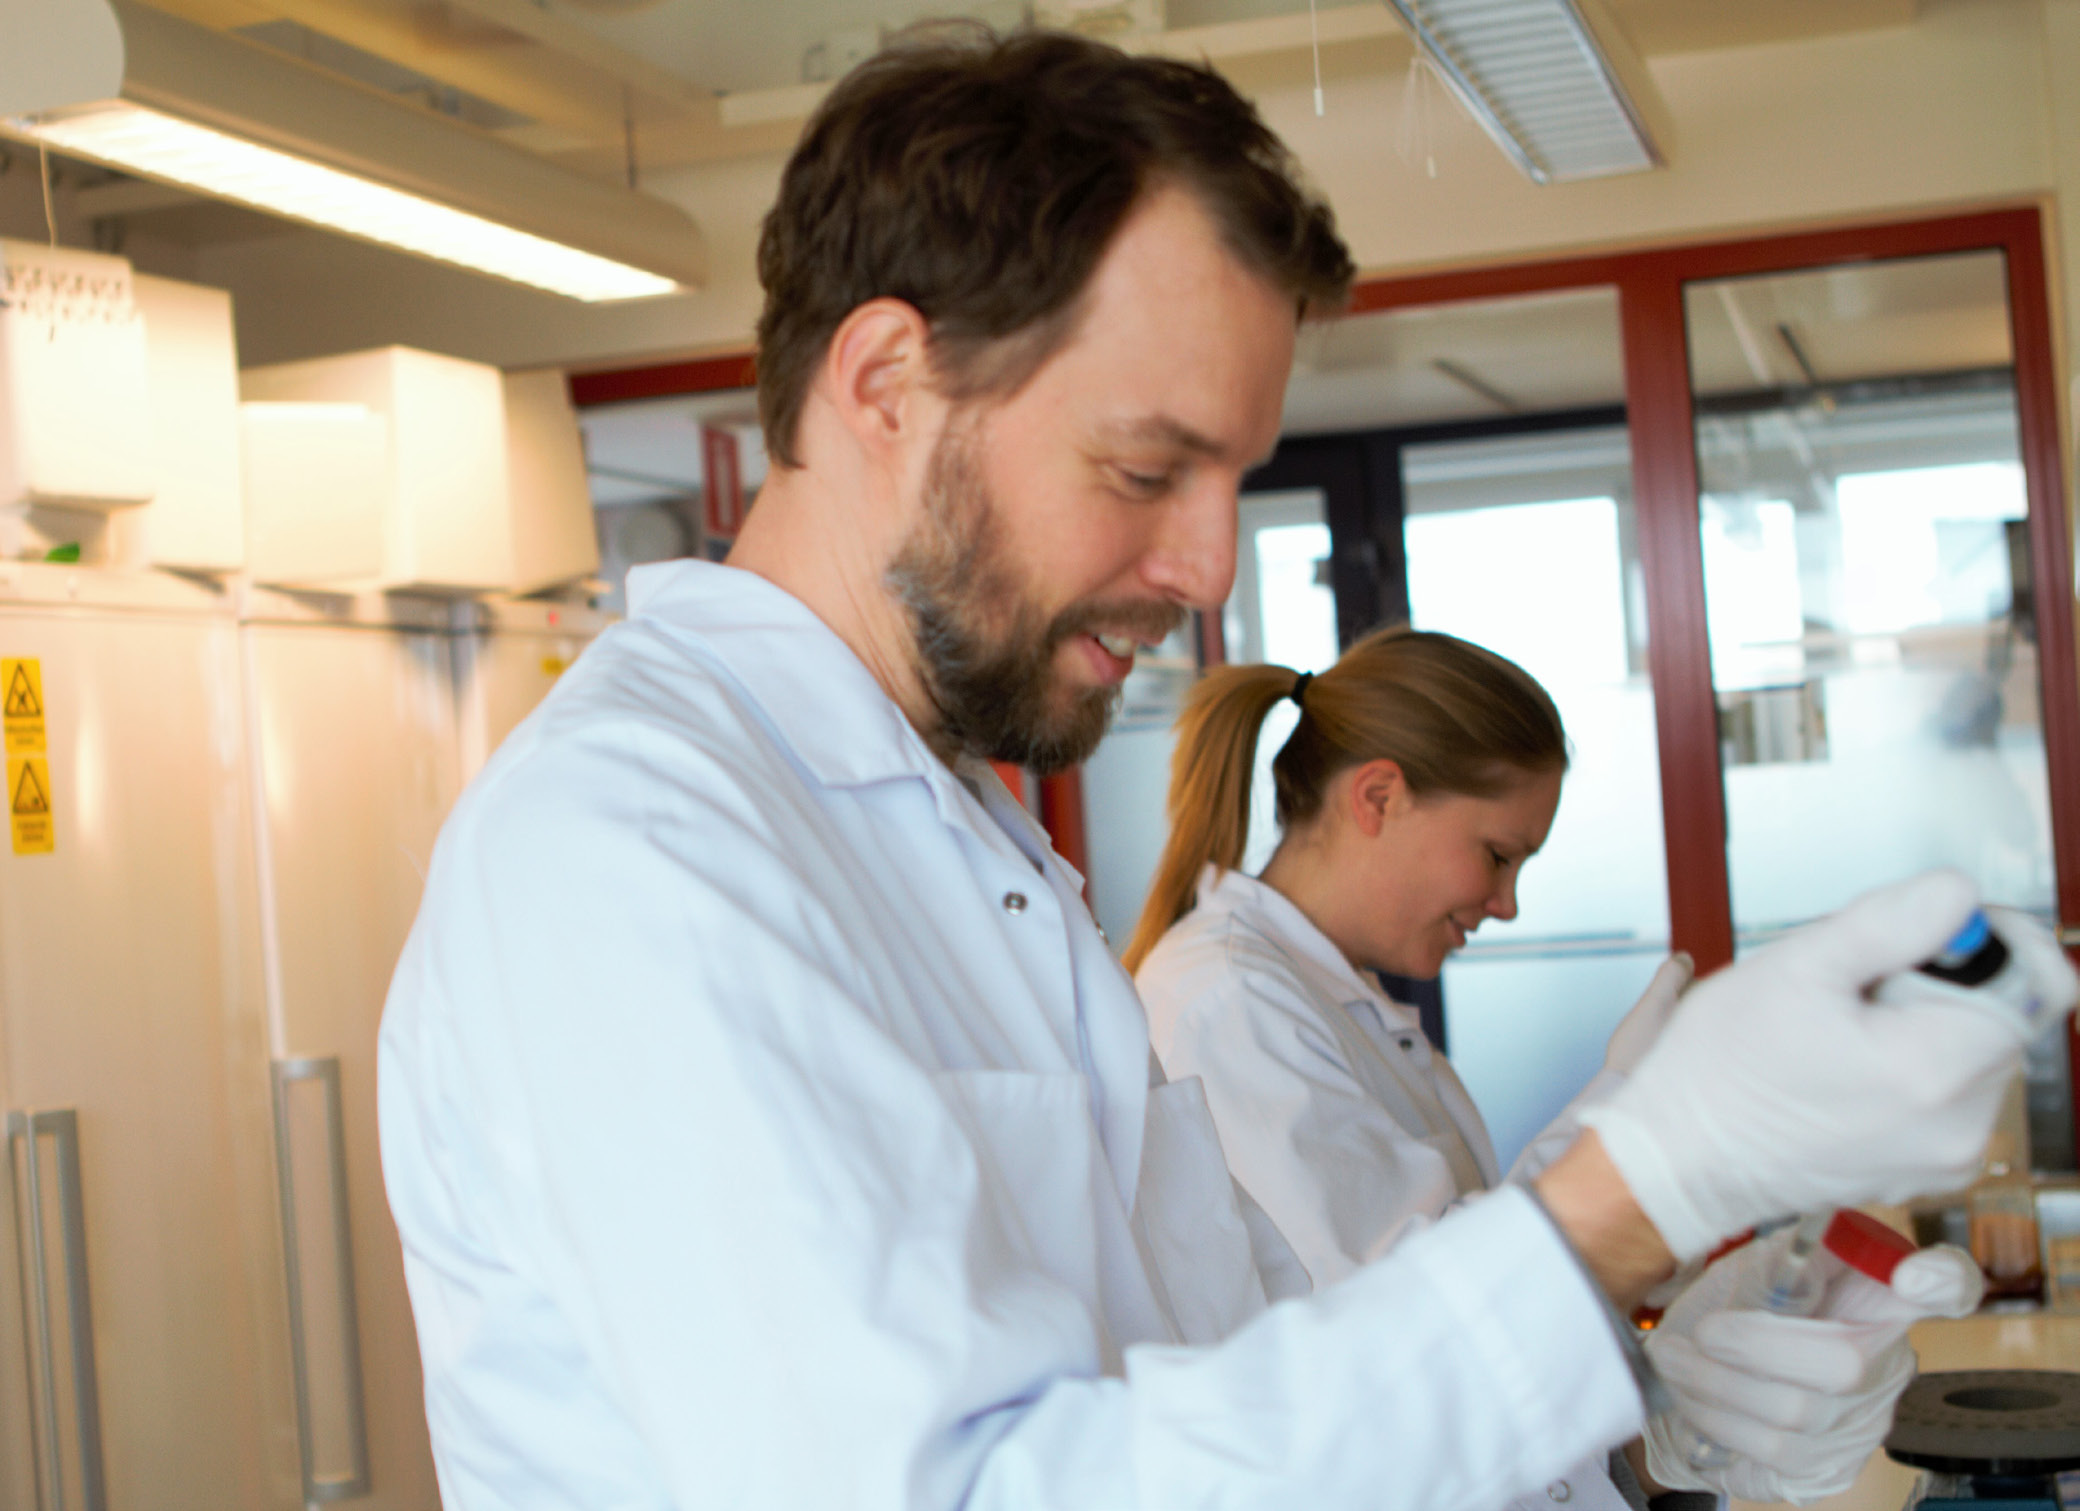 Medarbetare vid Immunovias laboratorium i Lund diagnostiserar pankreascancer med hjälp av en droppe blod på en microarray.